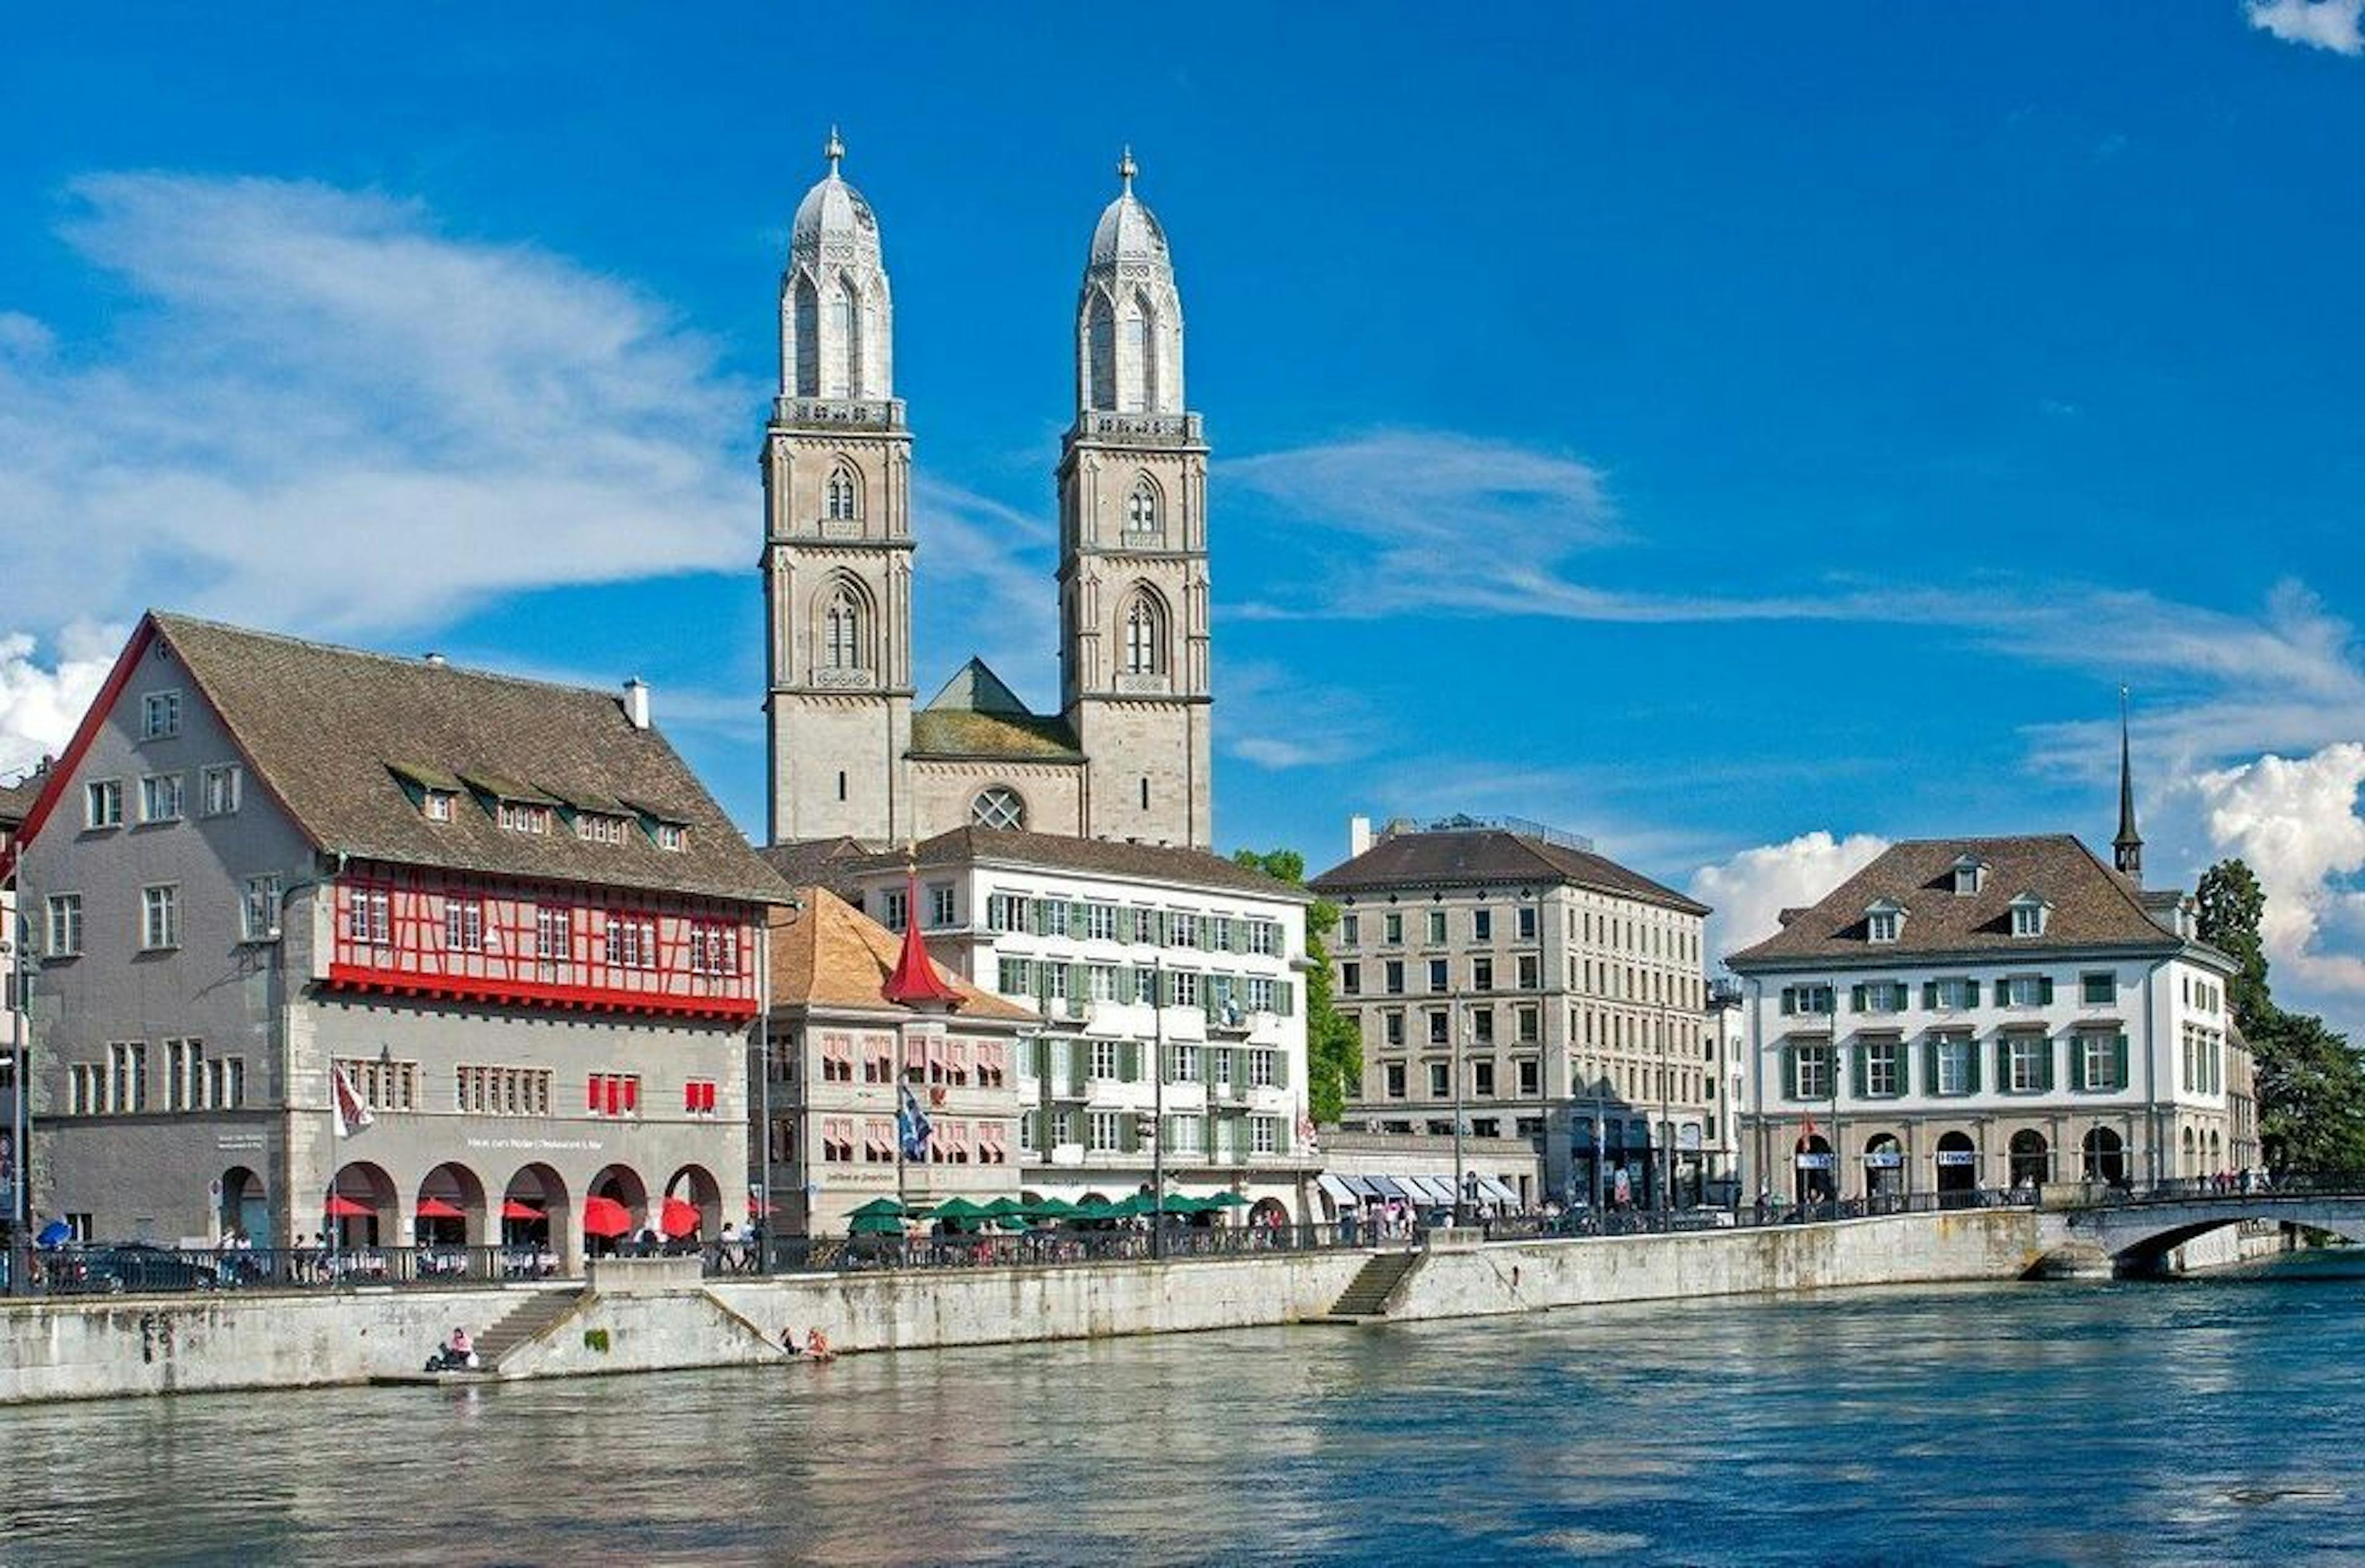 Zurich old town